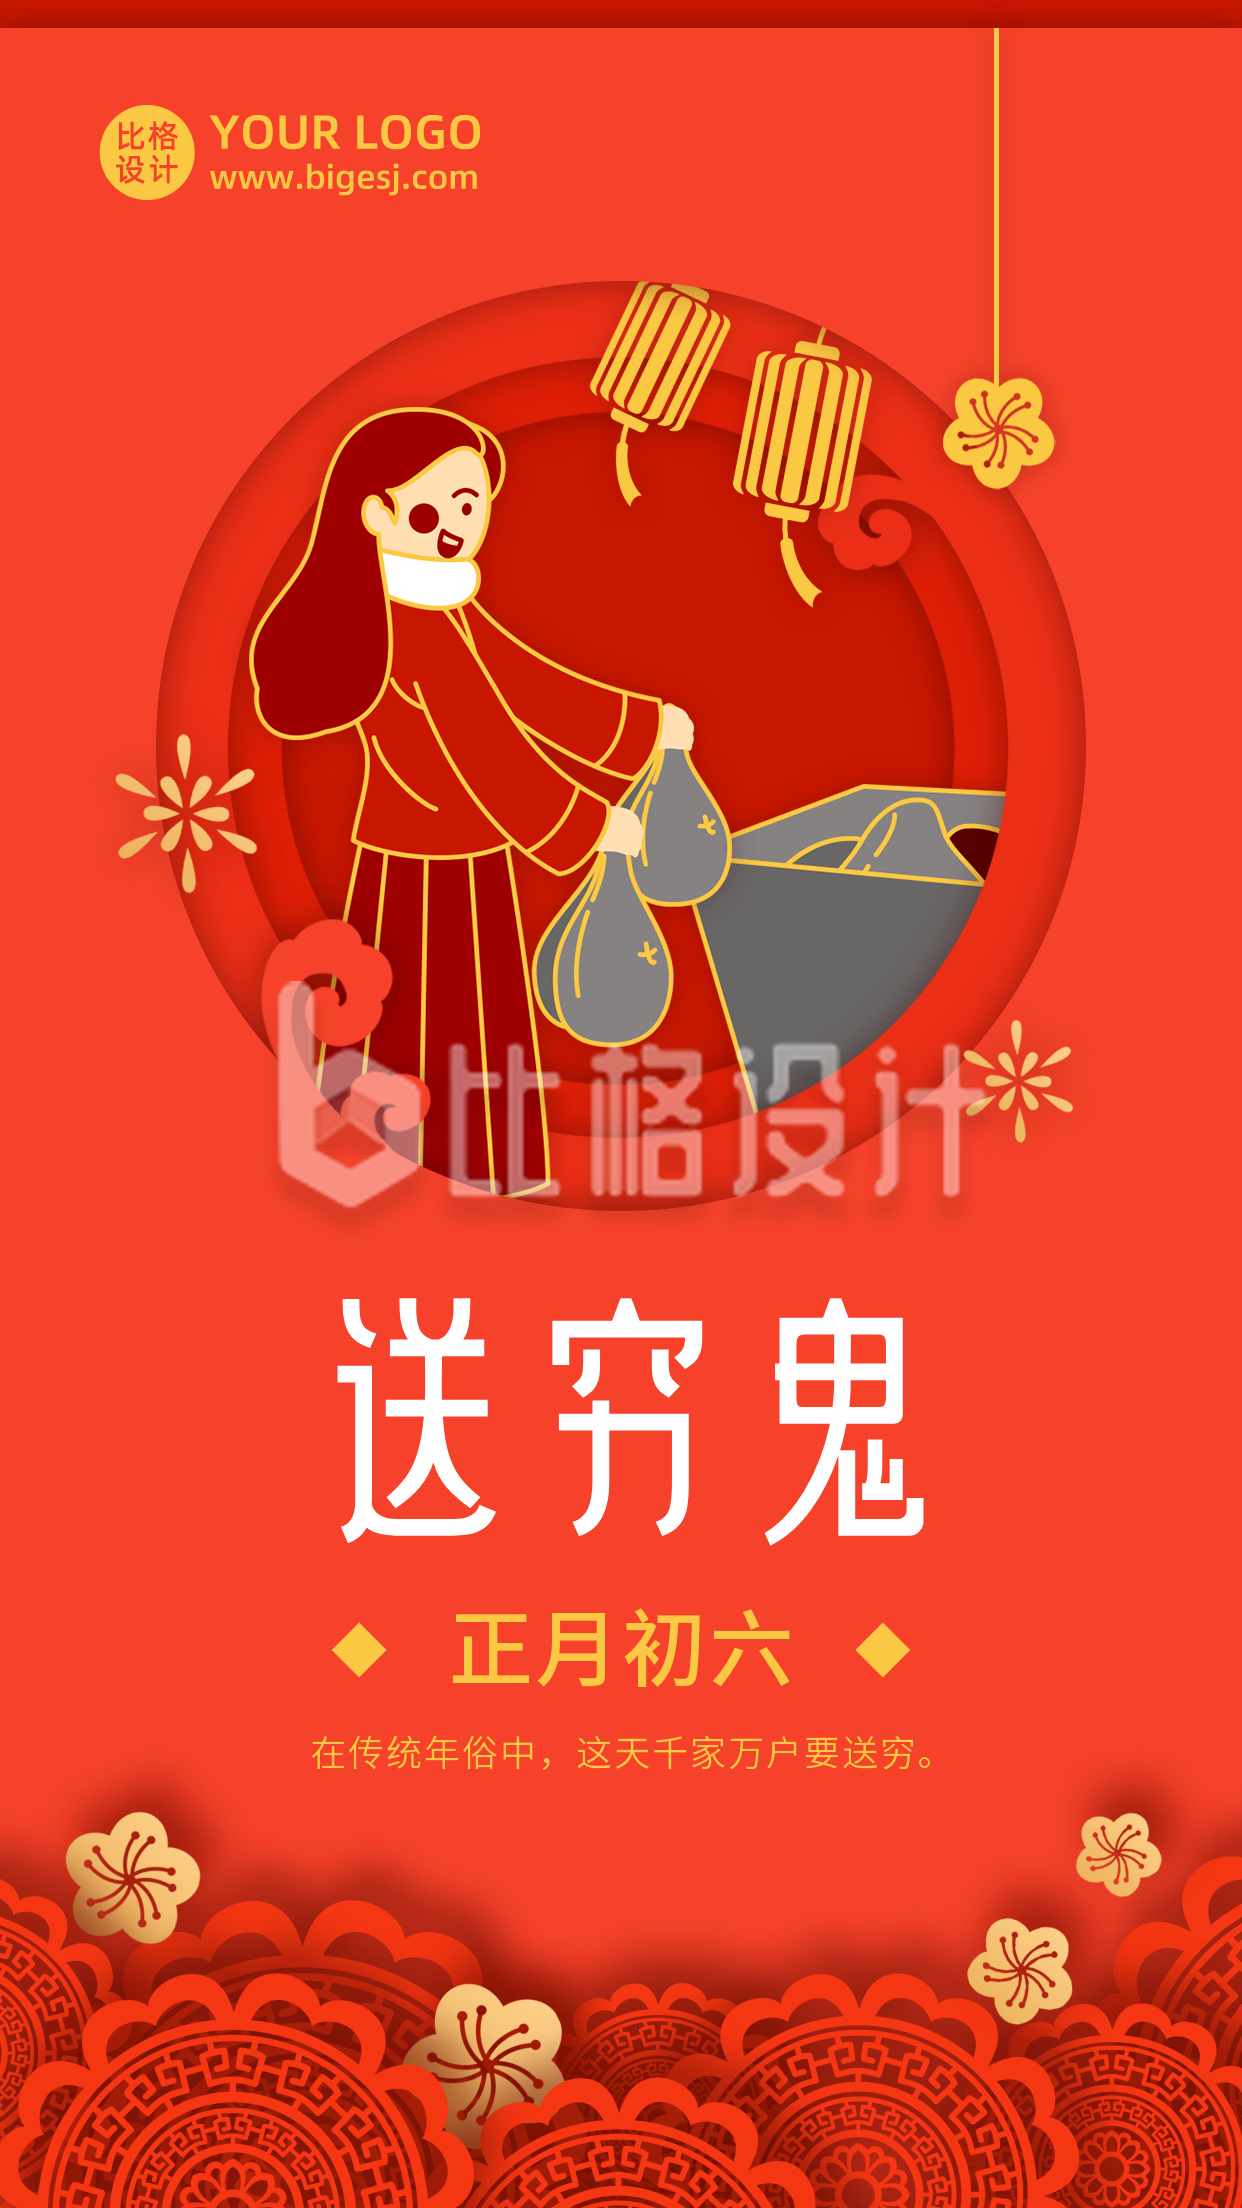 春节大年初六送穷鬼年俗剪纸风手机海报